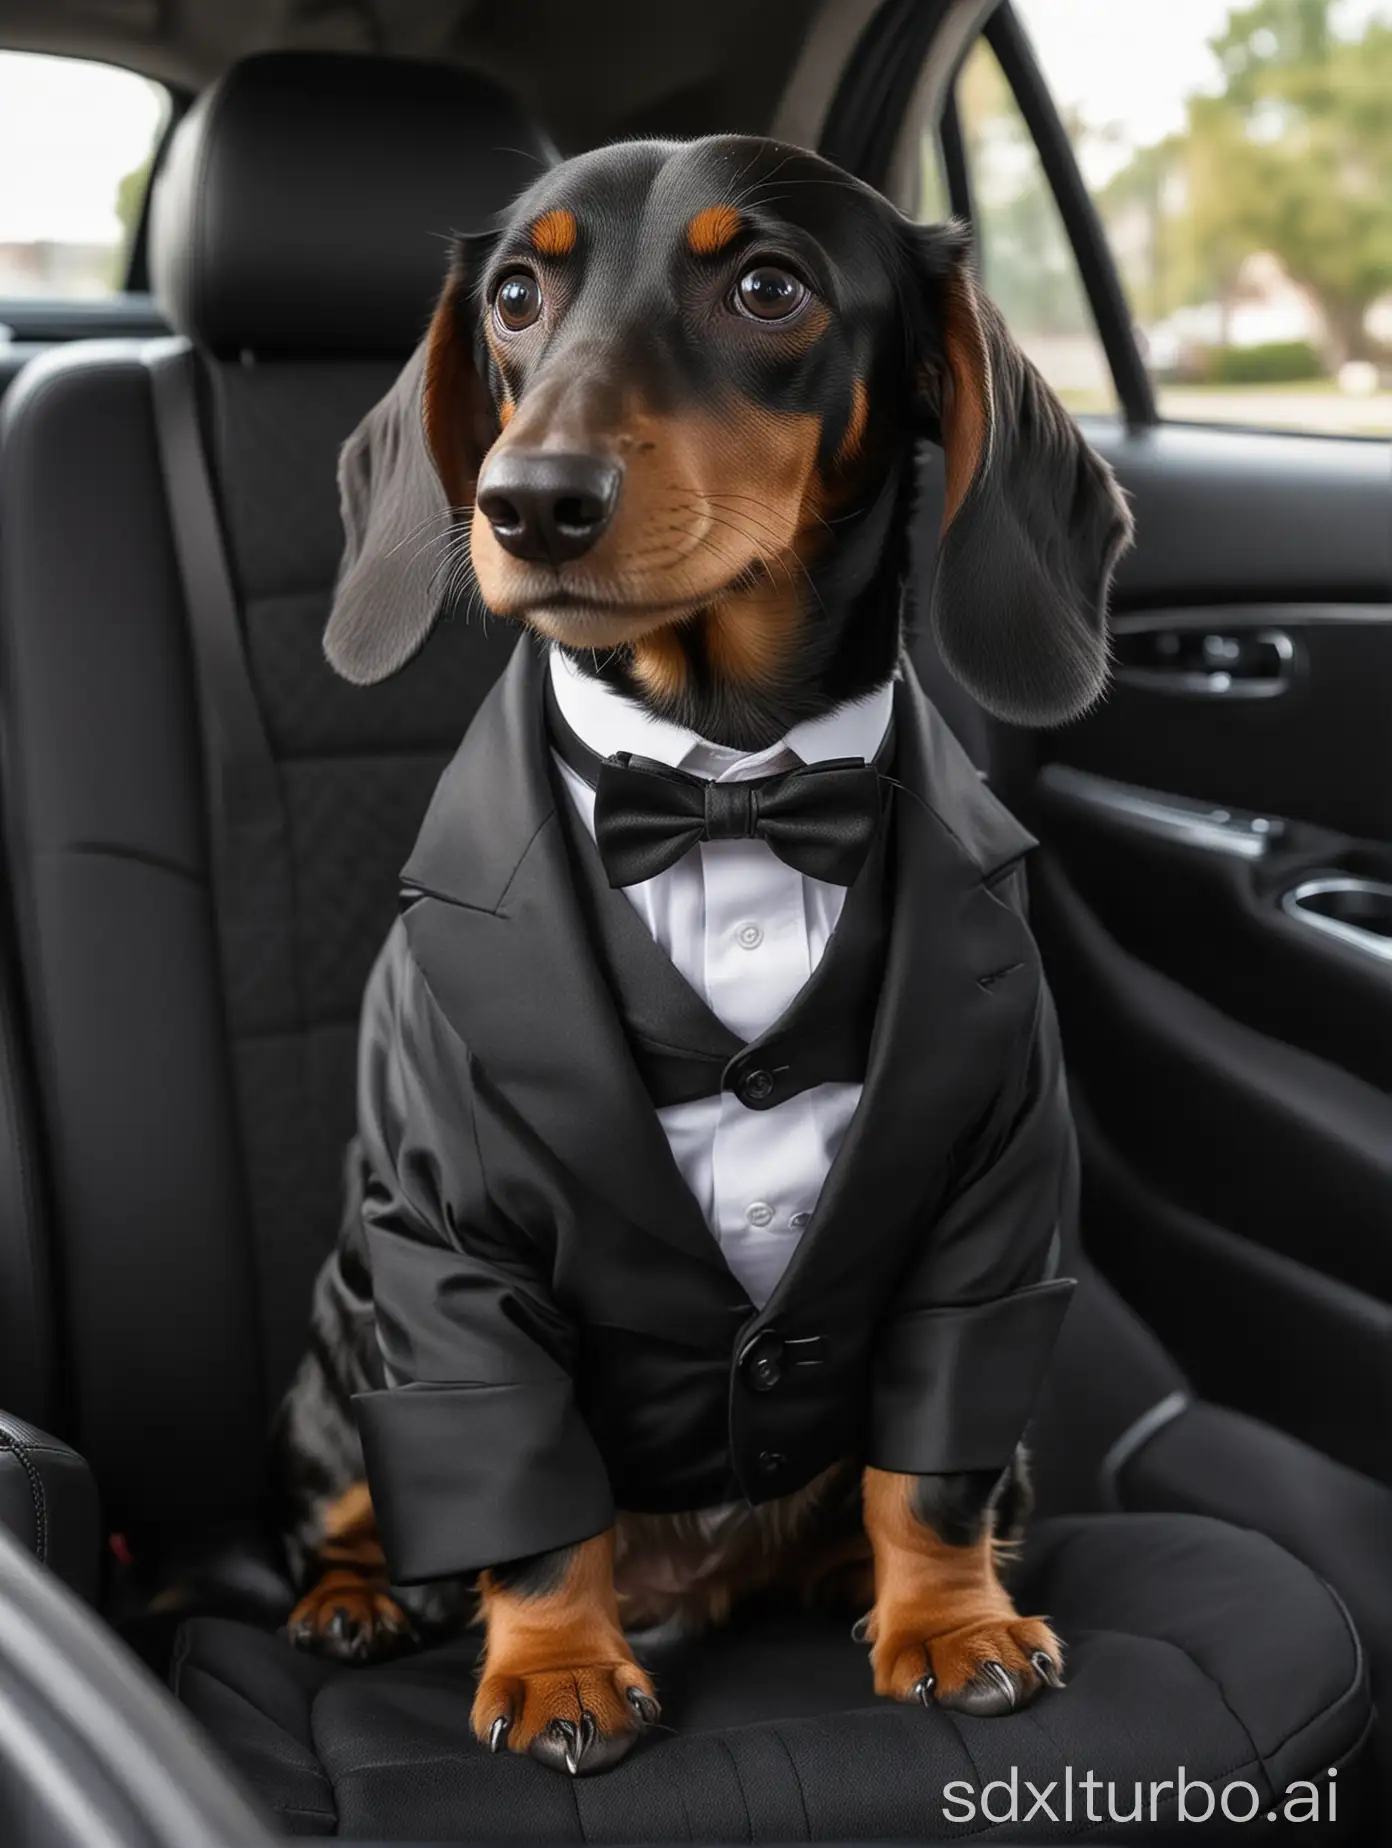 Elegant-Black-Dachshund-Dog-in-Tuxedo-Suit-on-Luxurious-Car-Seat